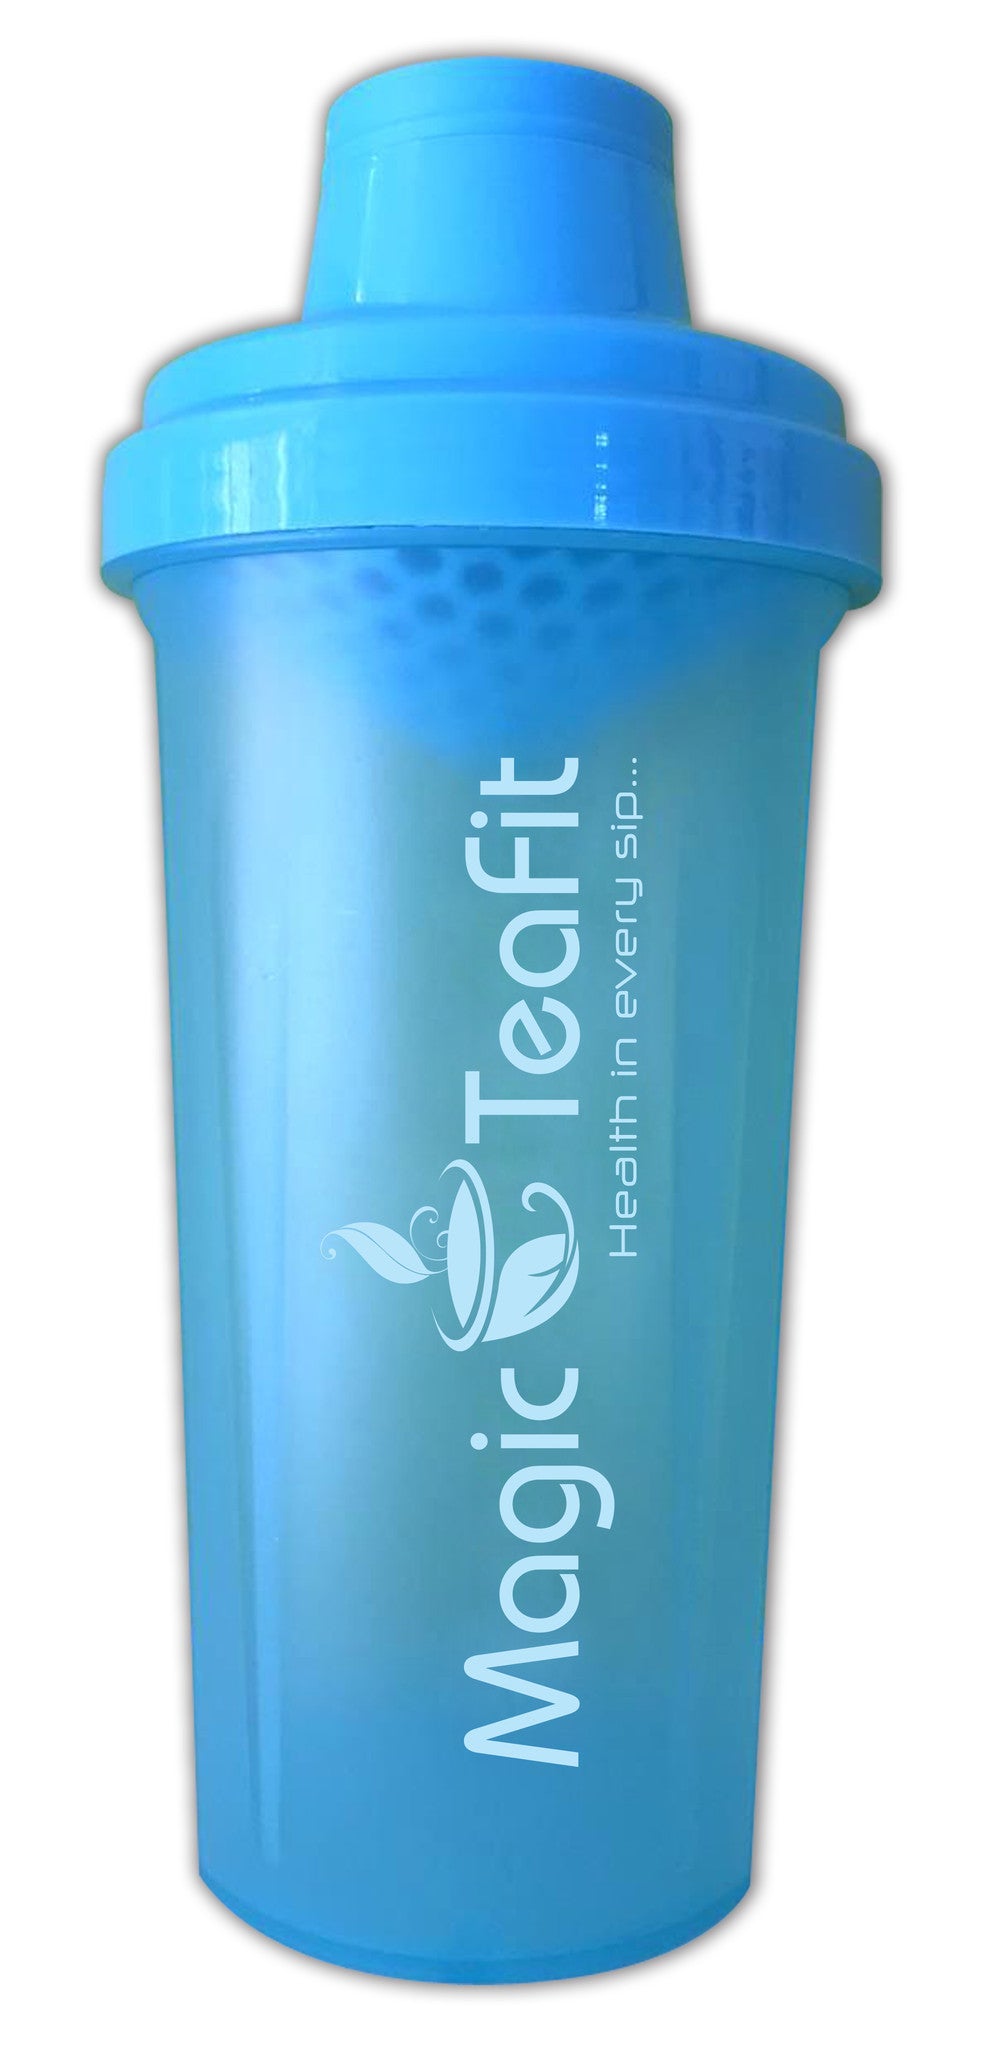 Magic Teafit Blue and Pink 2-Pack 25 oz Shaker Bottle